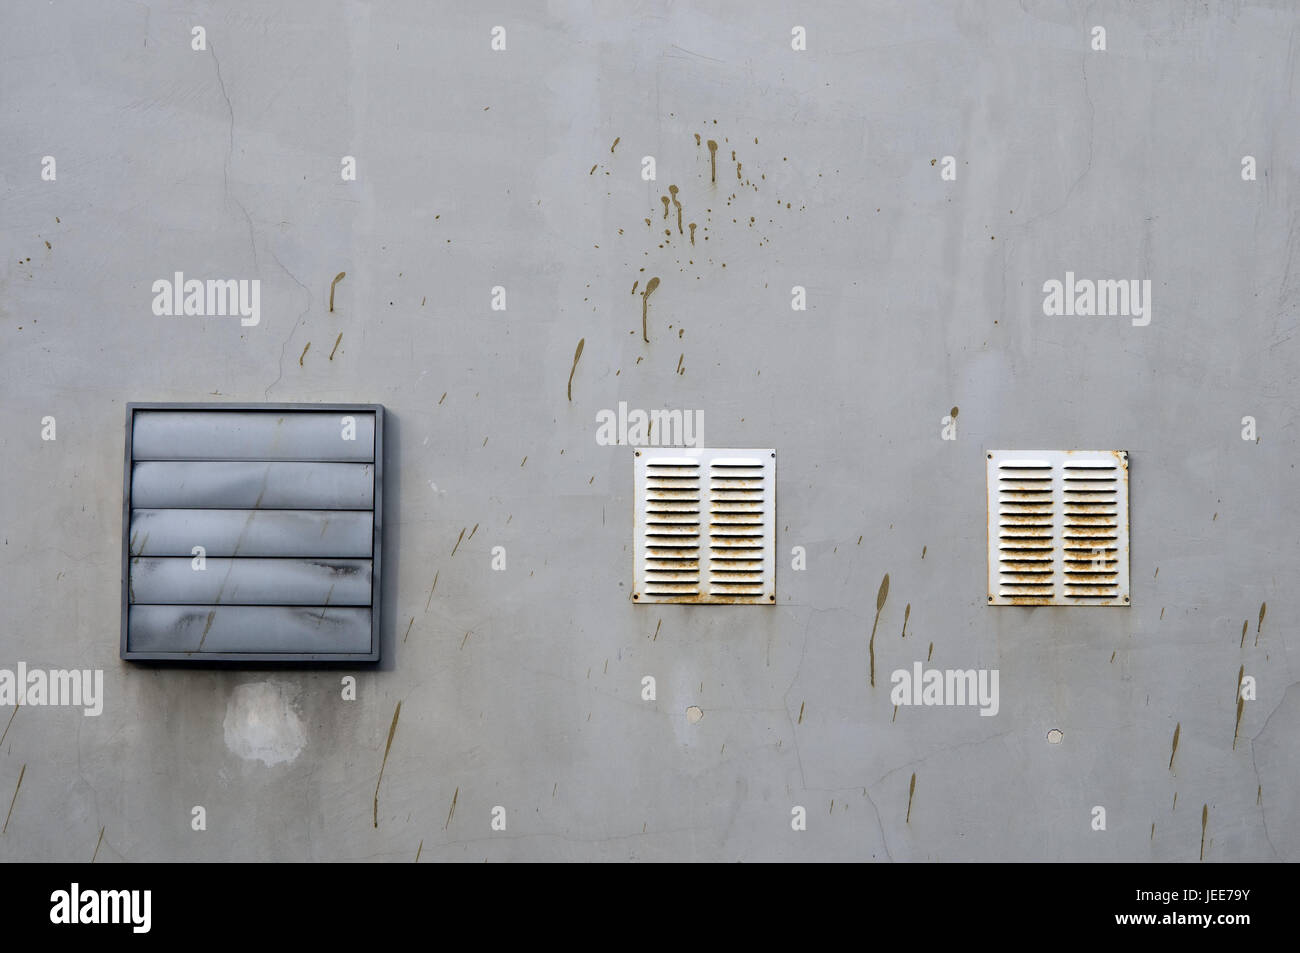 La pared de una casa, ventilación, aire ejes, rusty, dirtily, ranuras, disparar, disparar, orificio exterior, barro, Foto de stock